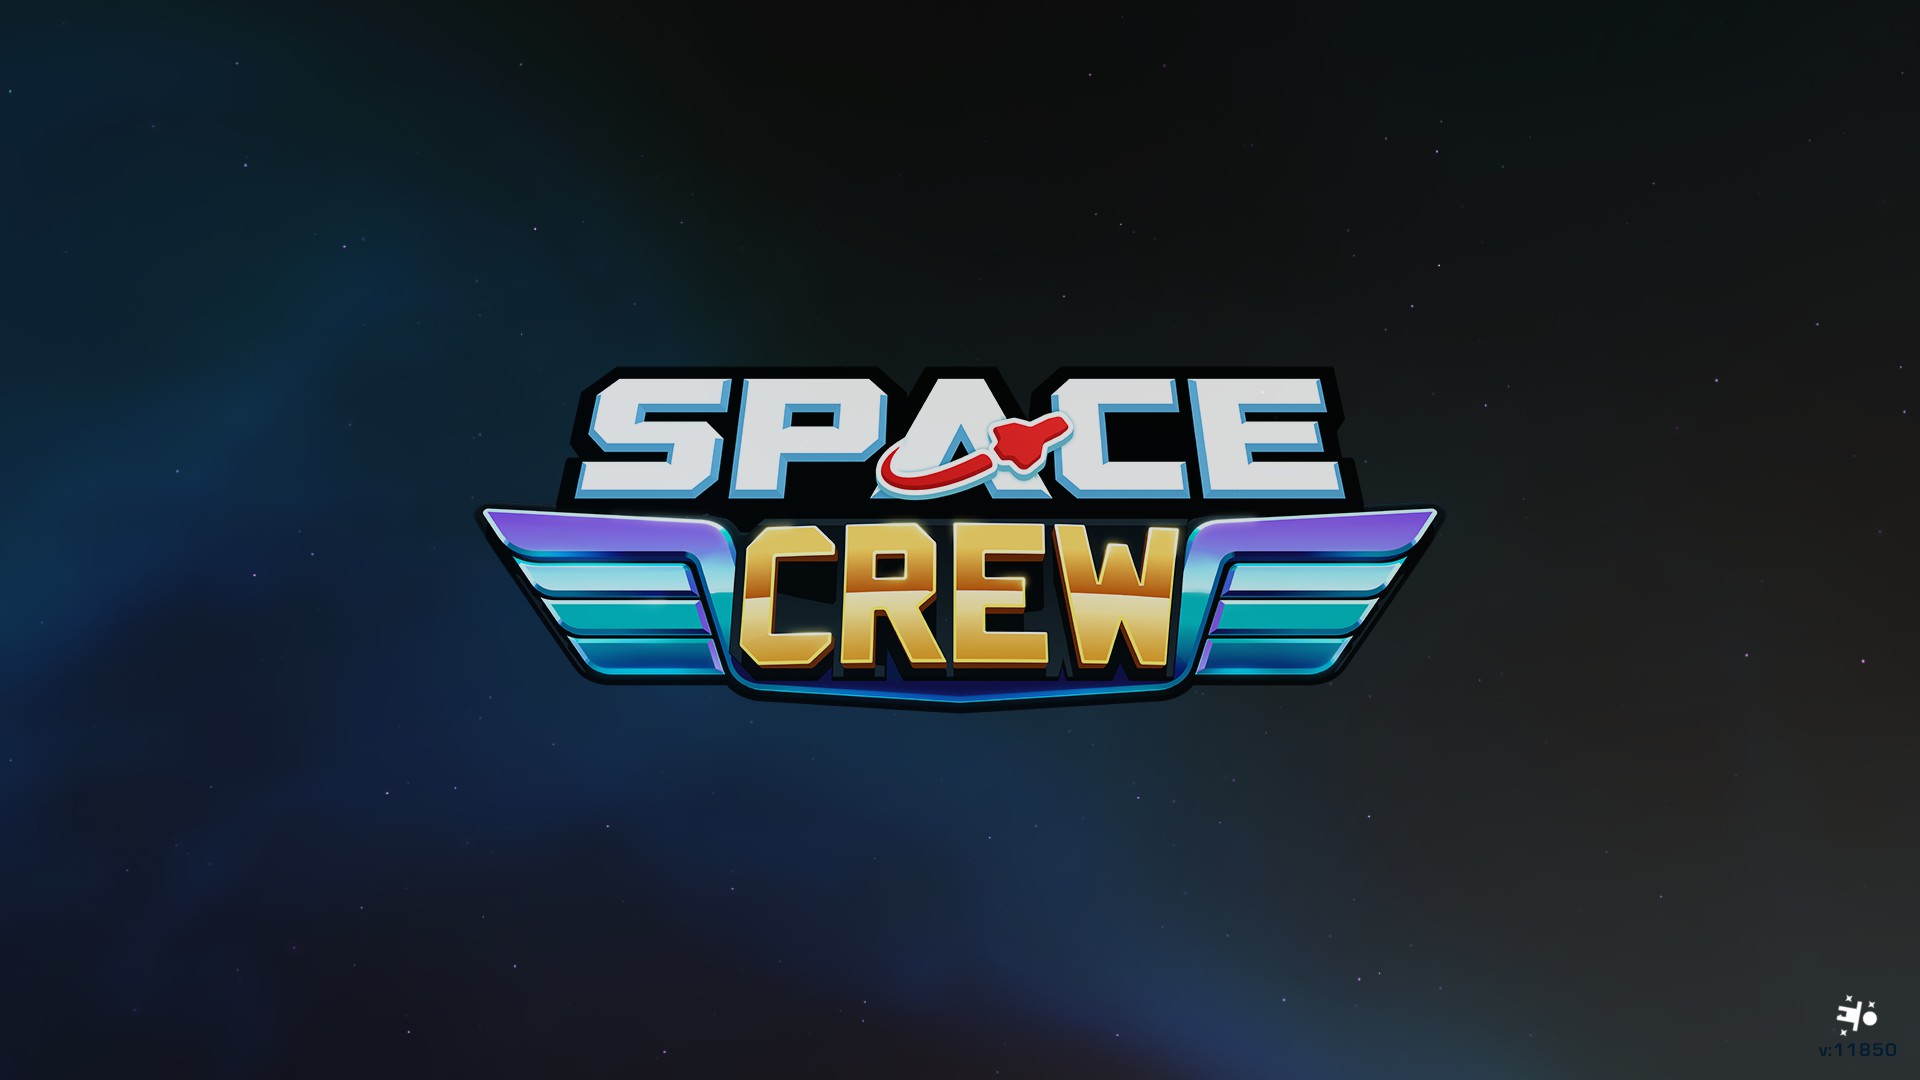 Space Crew logo